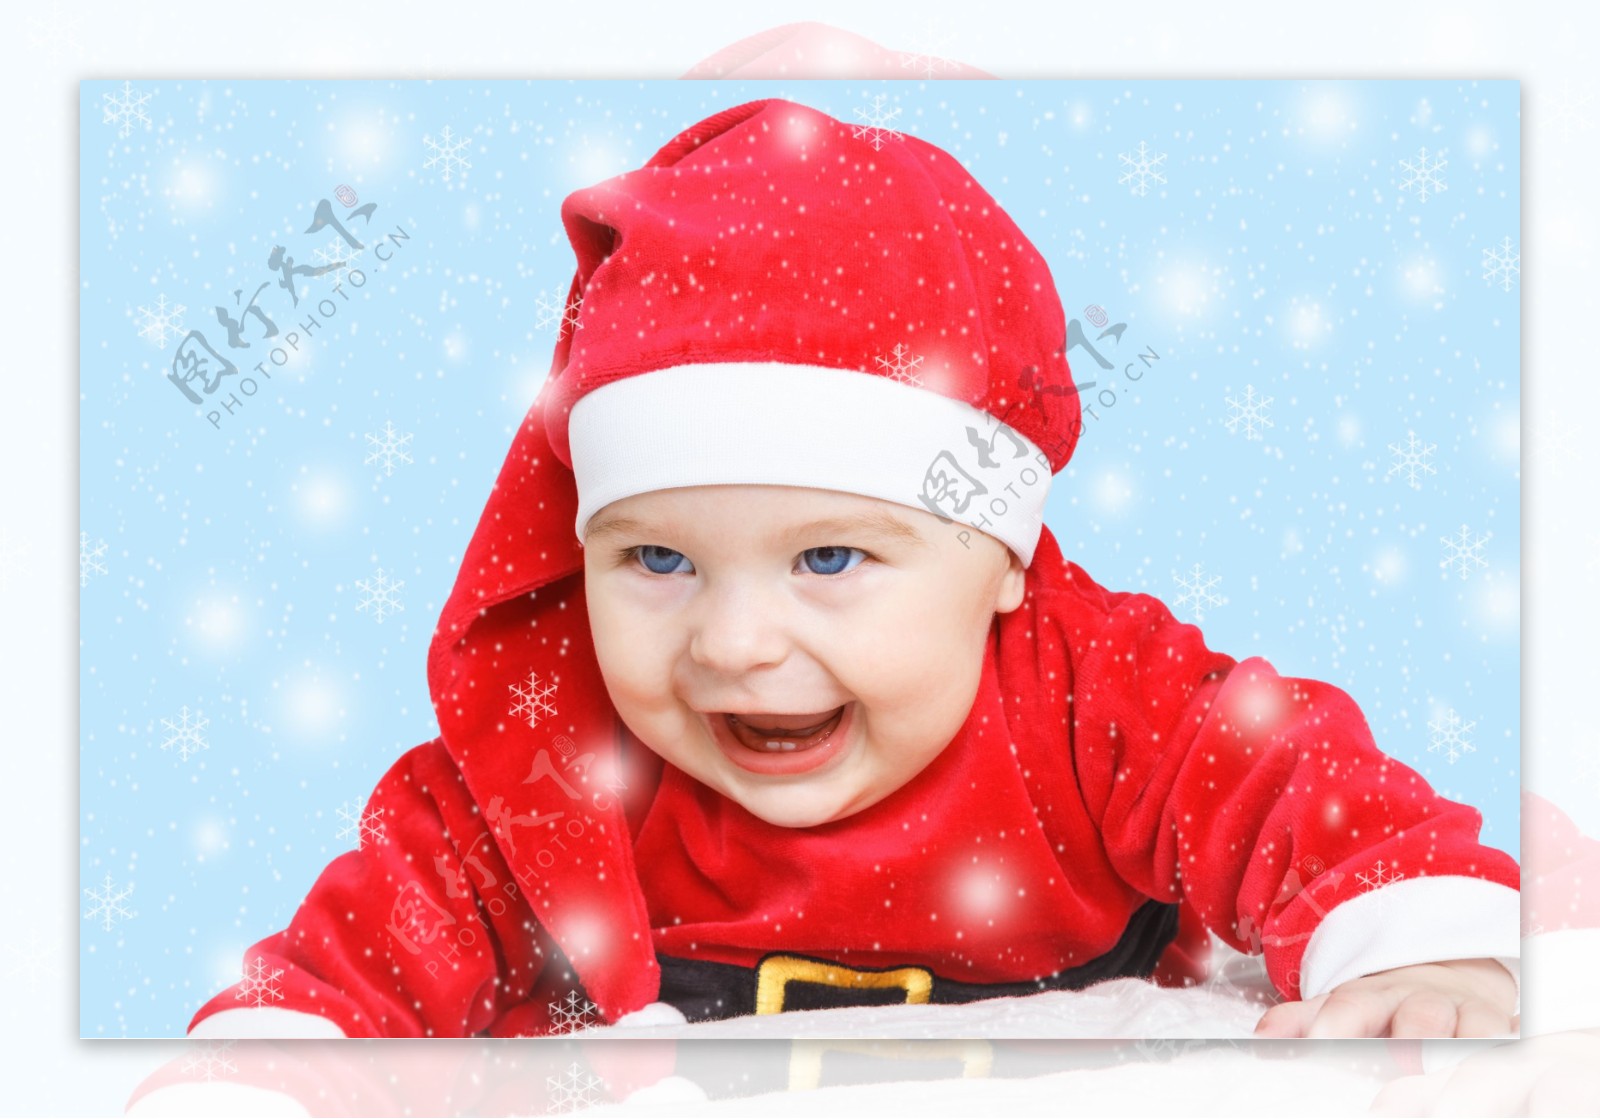 笑容可爱的圣诞装宝宝图片